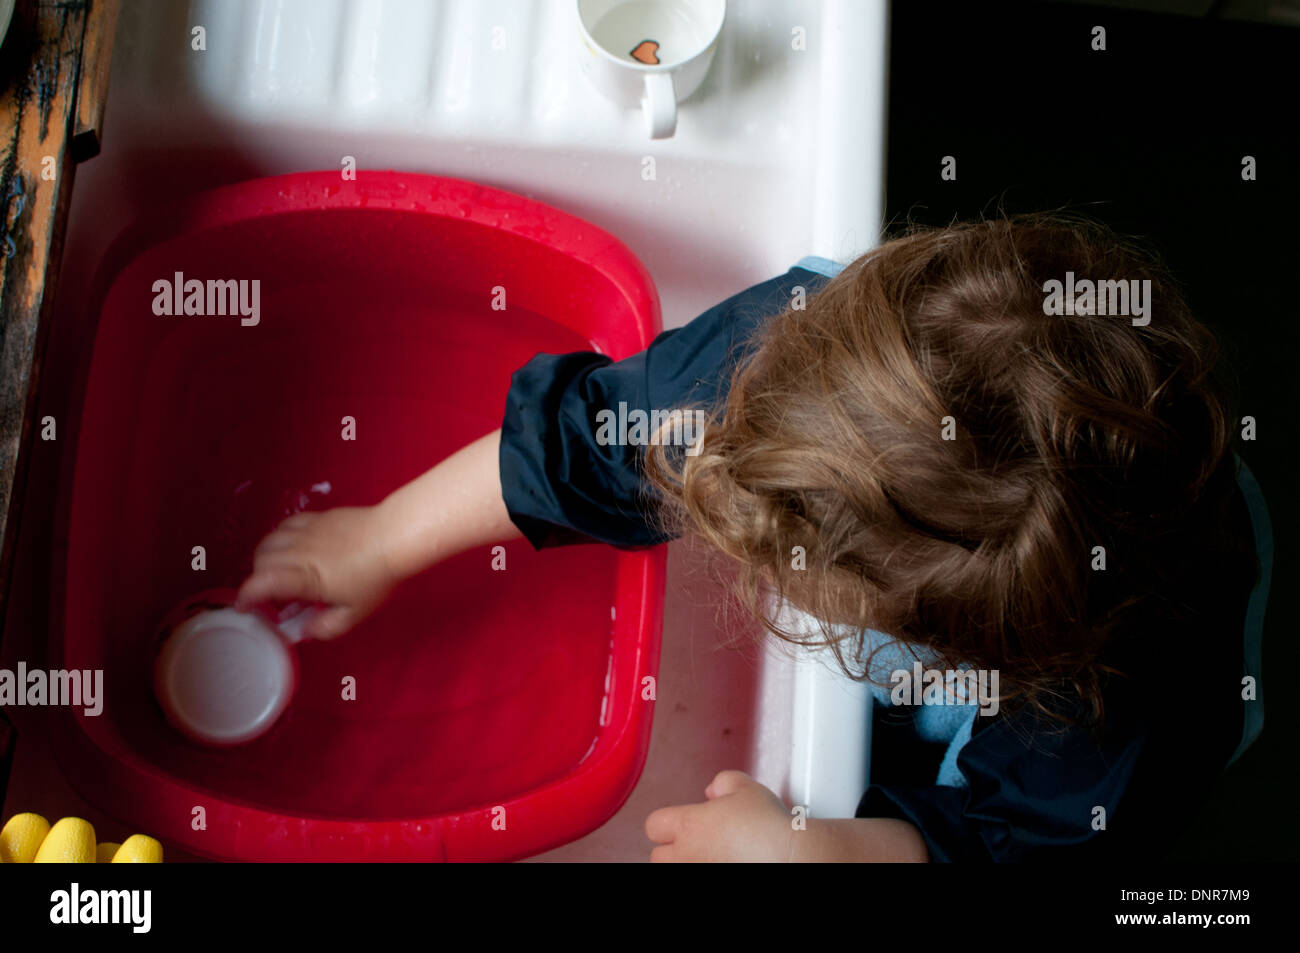 toddler playing at sink Stock Photo